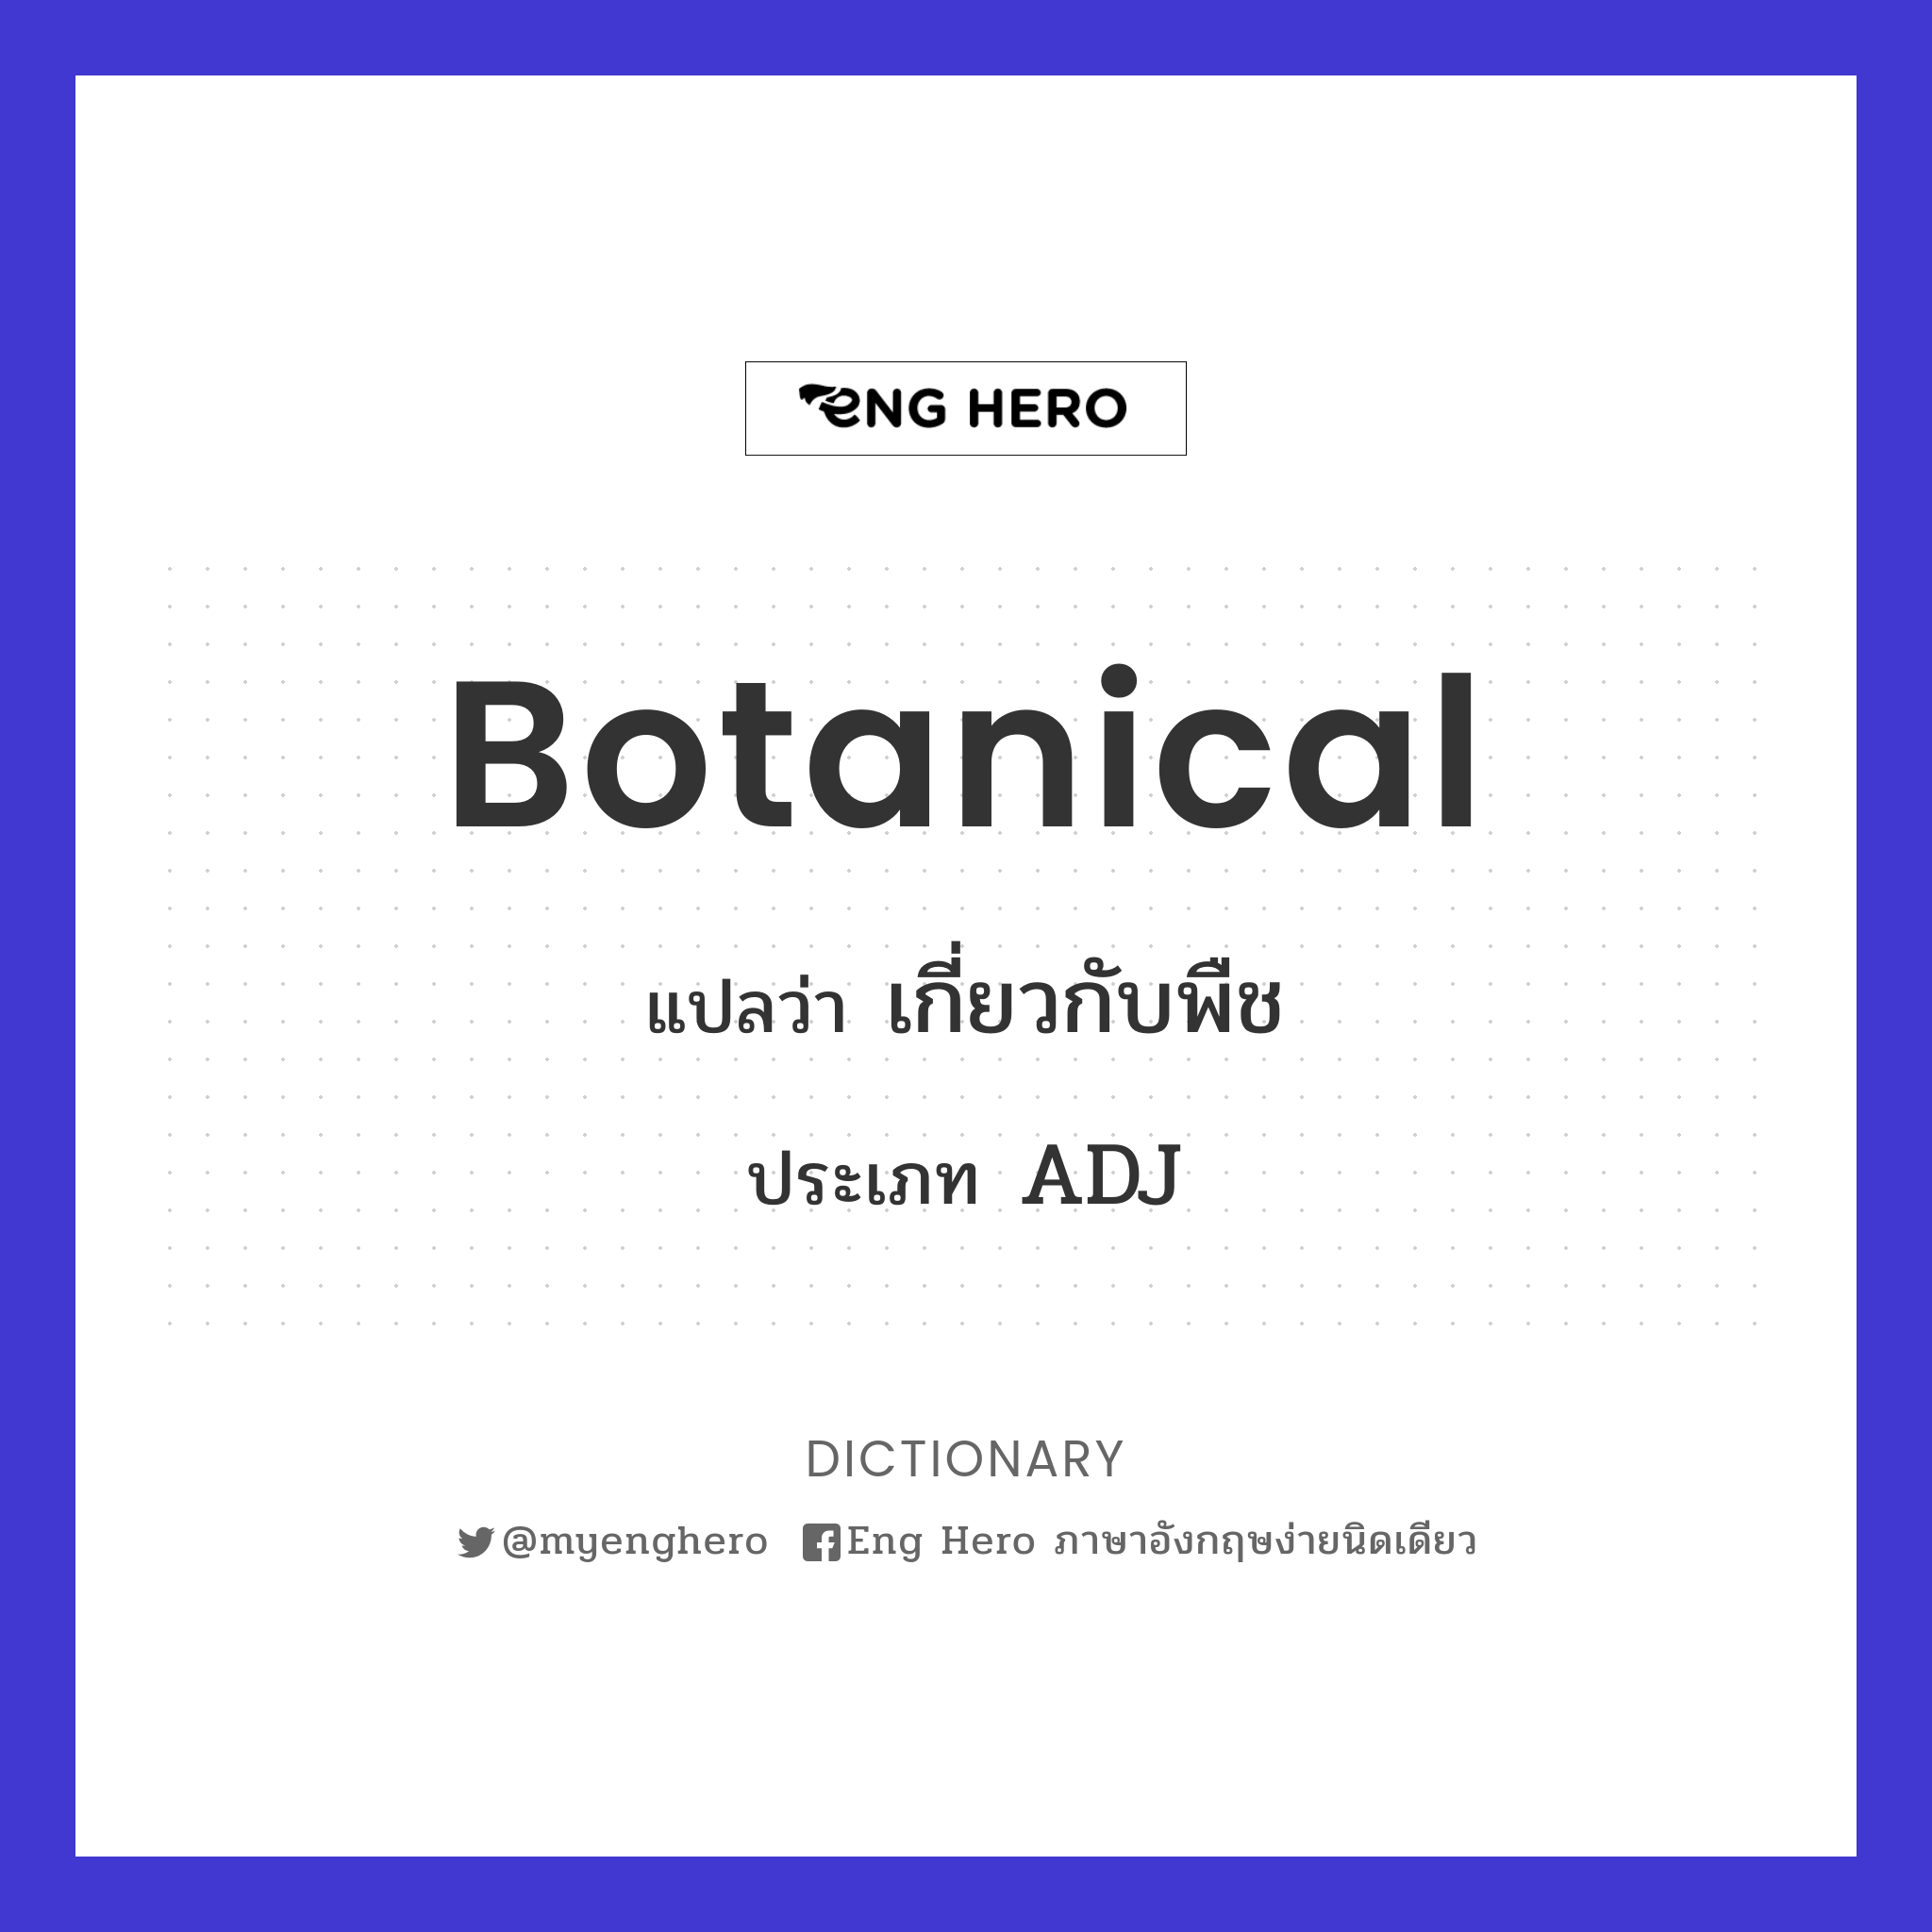 botanical